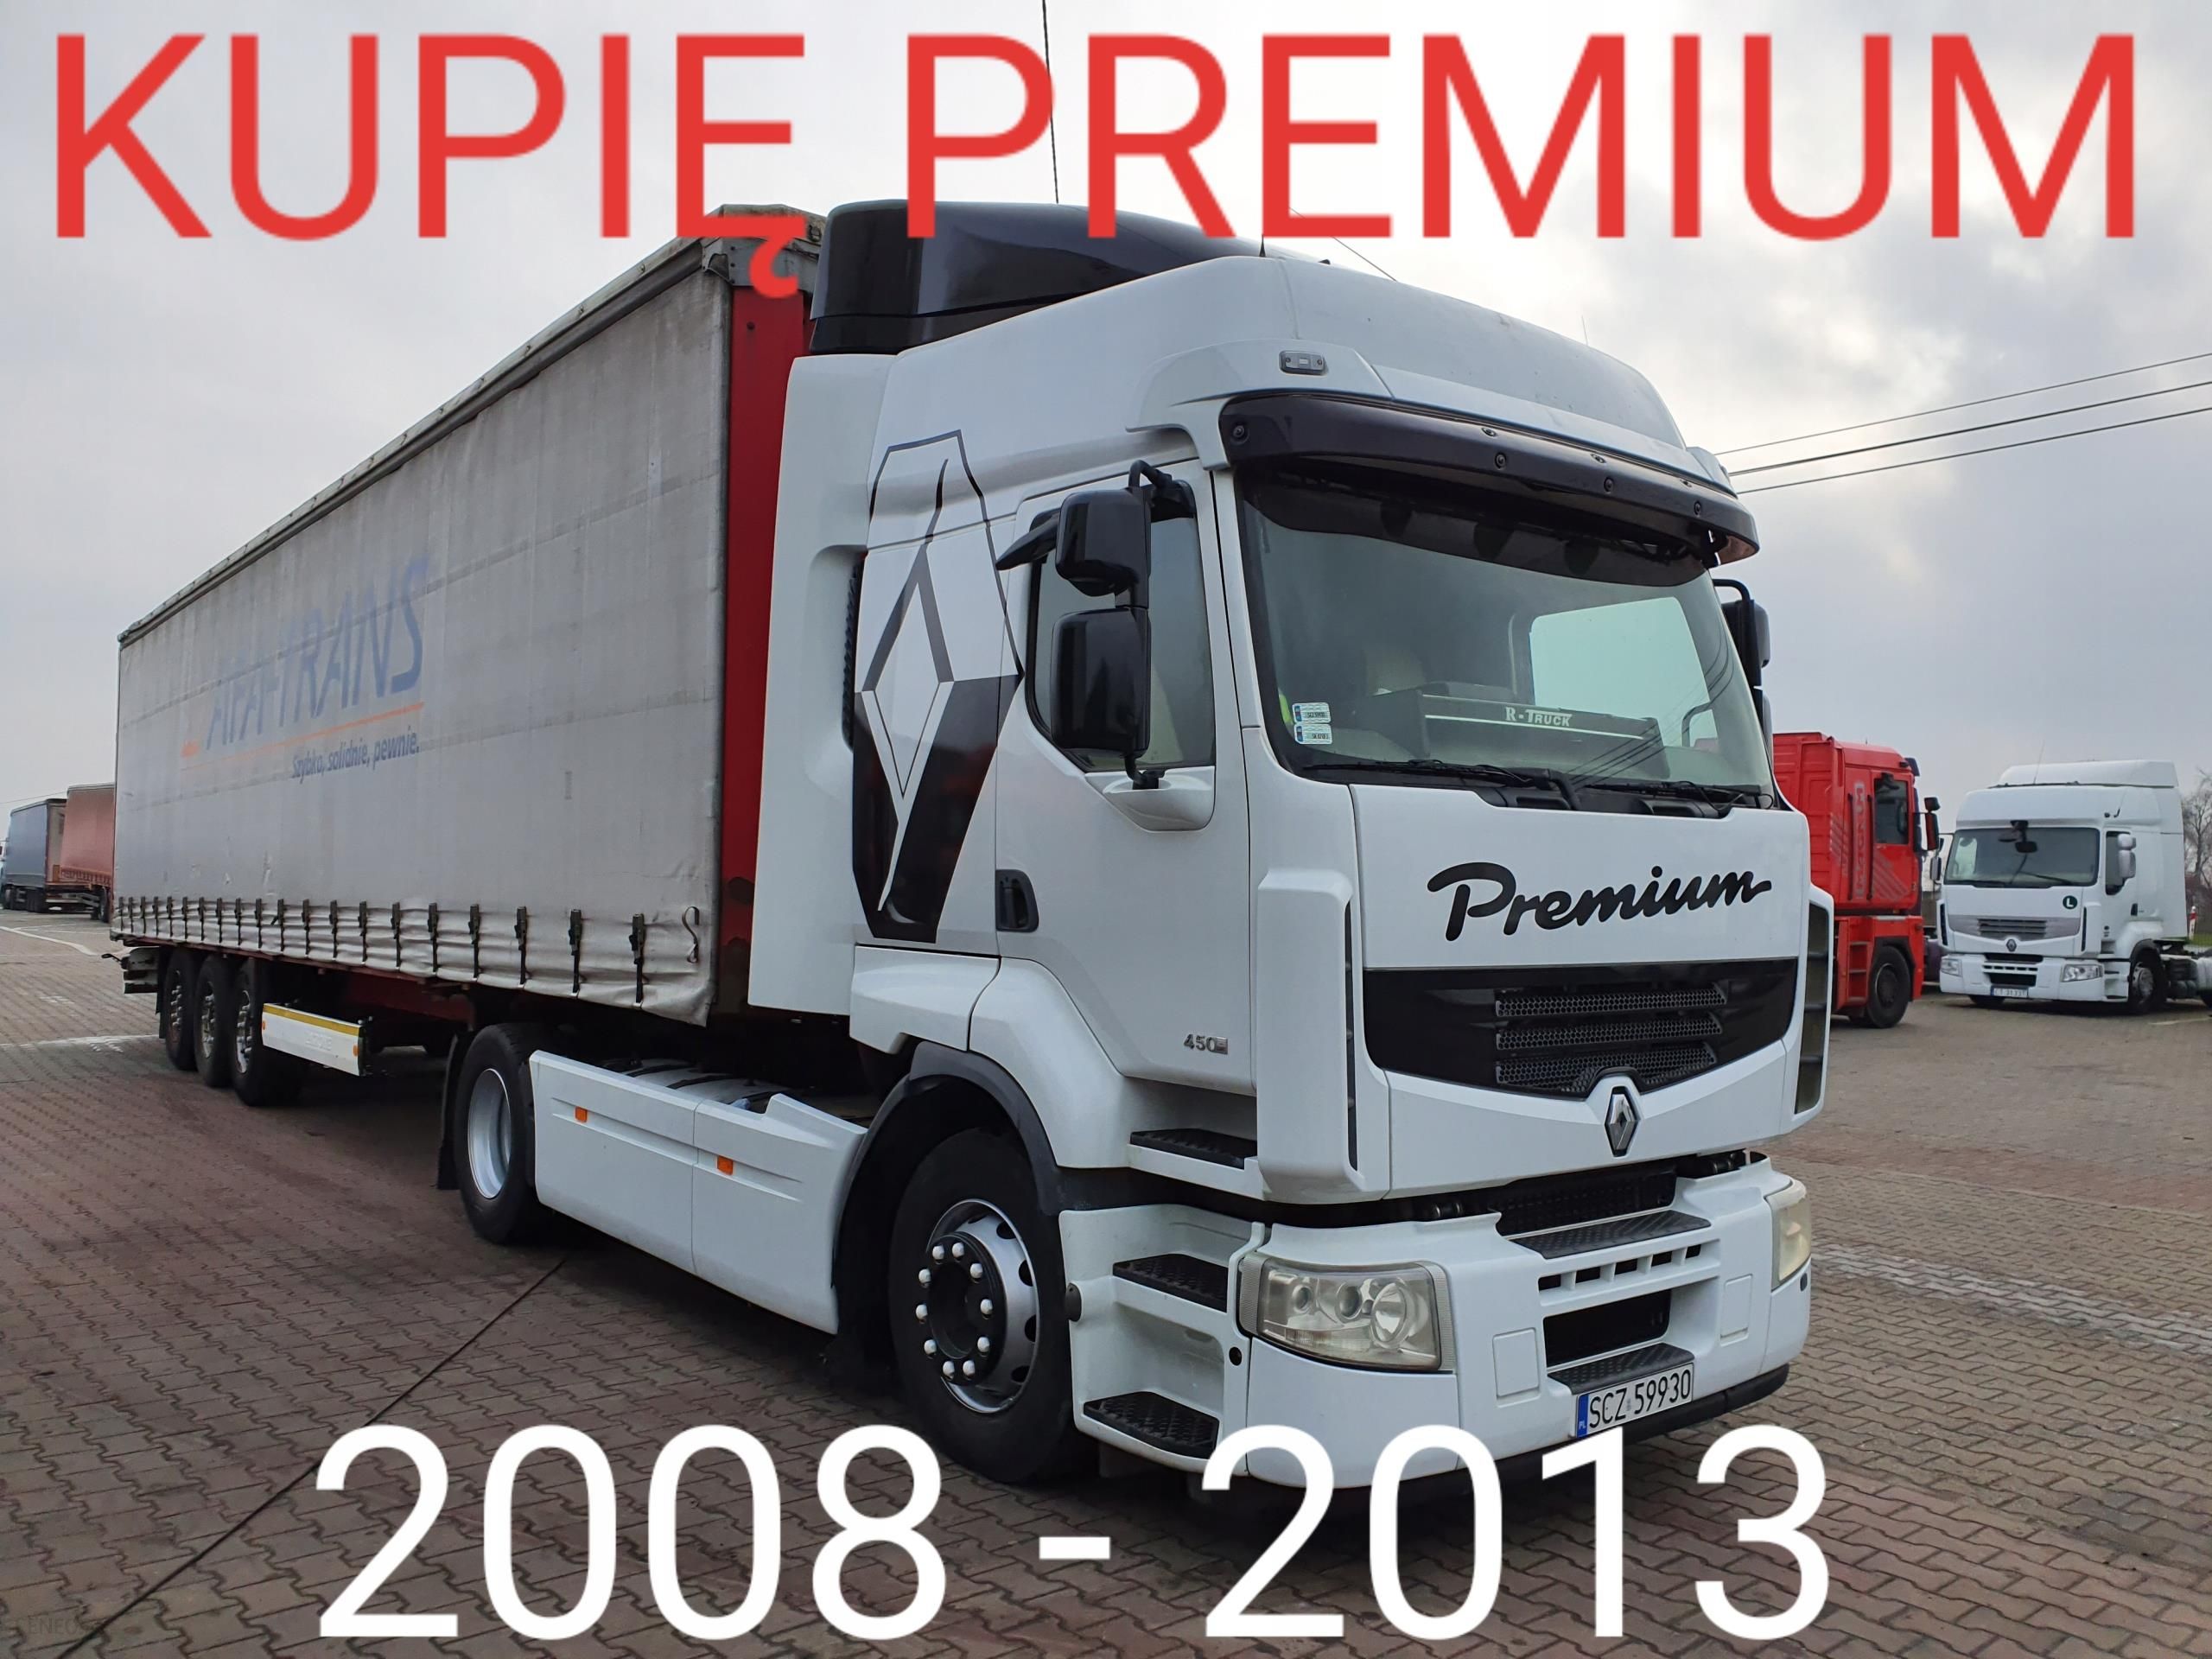 Kupię Renault Premium 2008 - 2013 Kilka Sztuk - Opinie I Ceny Na Ceneo.pl